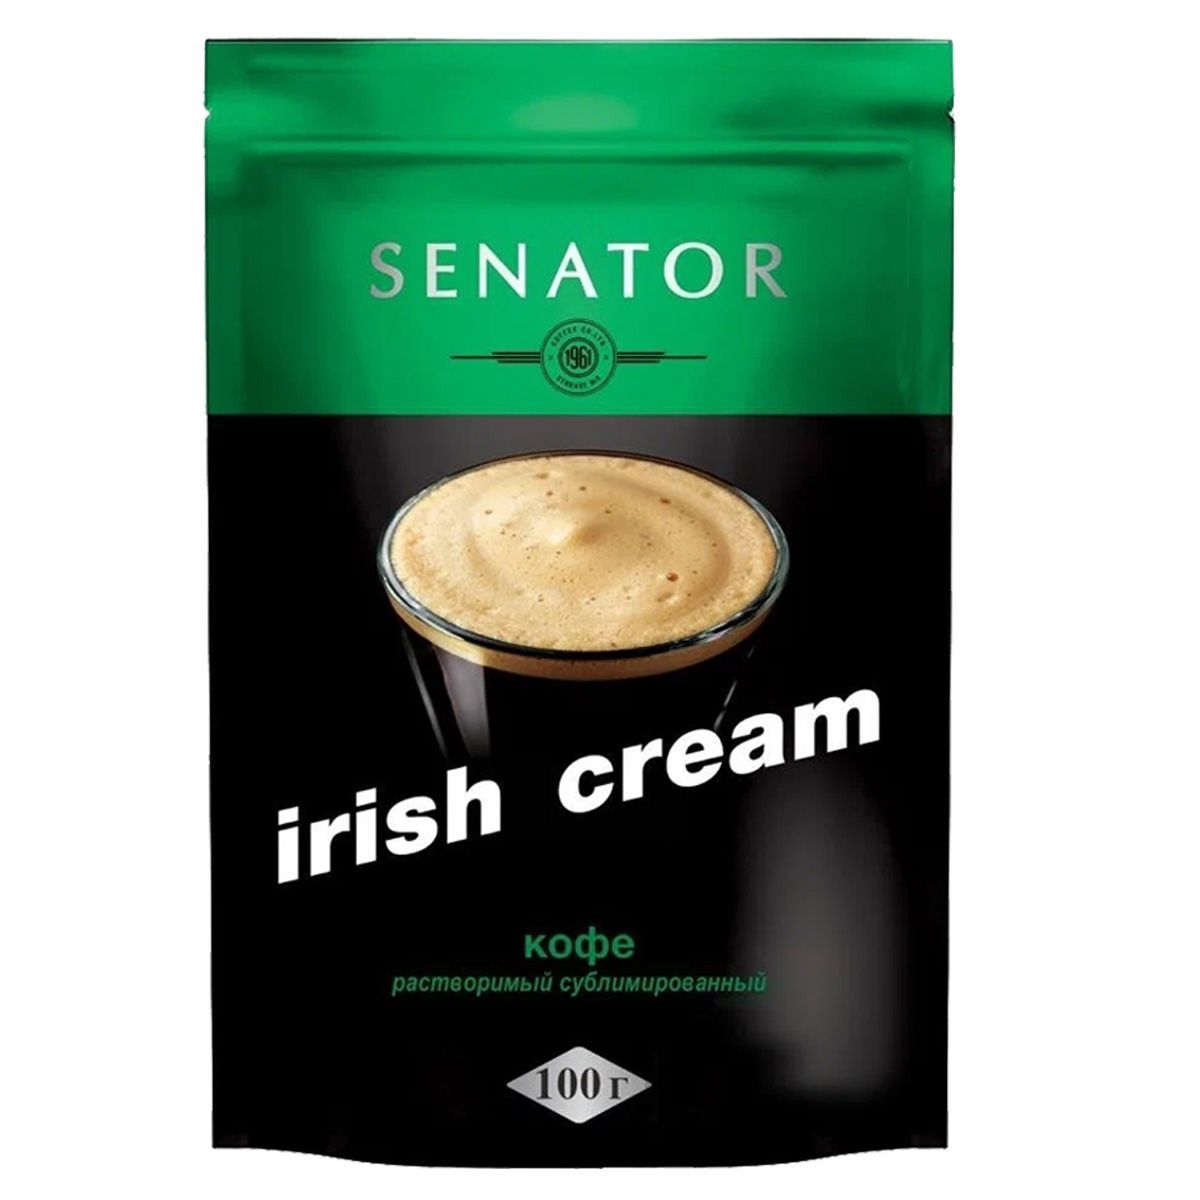 Сливки растворимым кофе. Kофе Senator Cappuccino 100г. Айриш Крим кофе. Кофе ирландский крем. Кофе растворимый сублимированный.